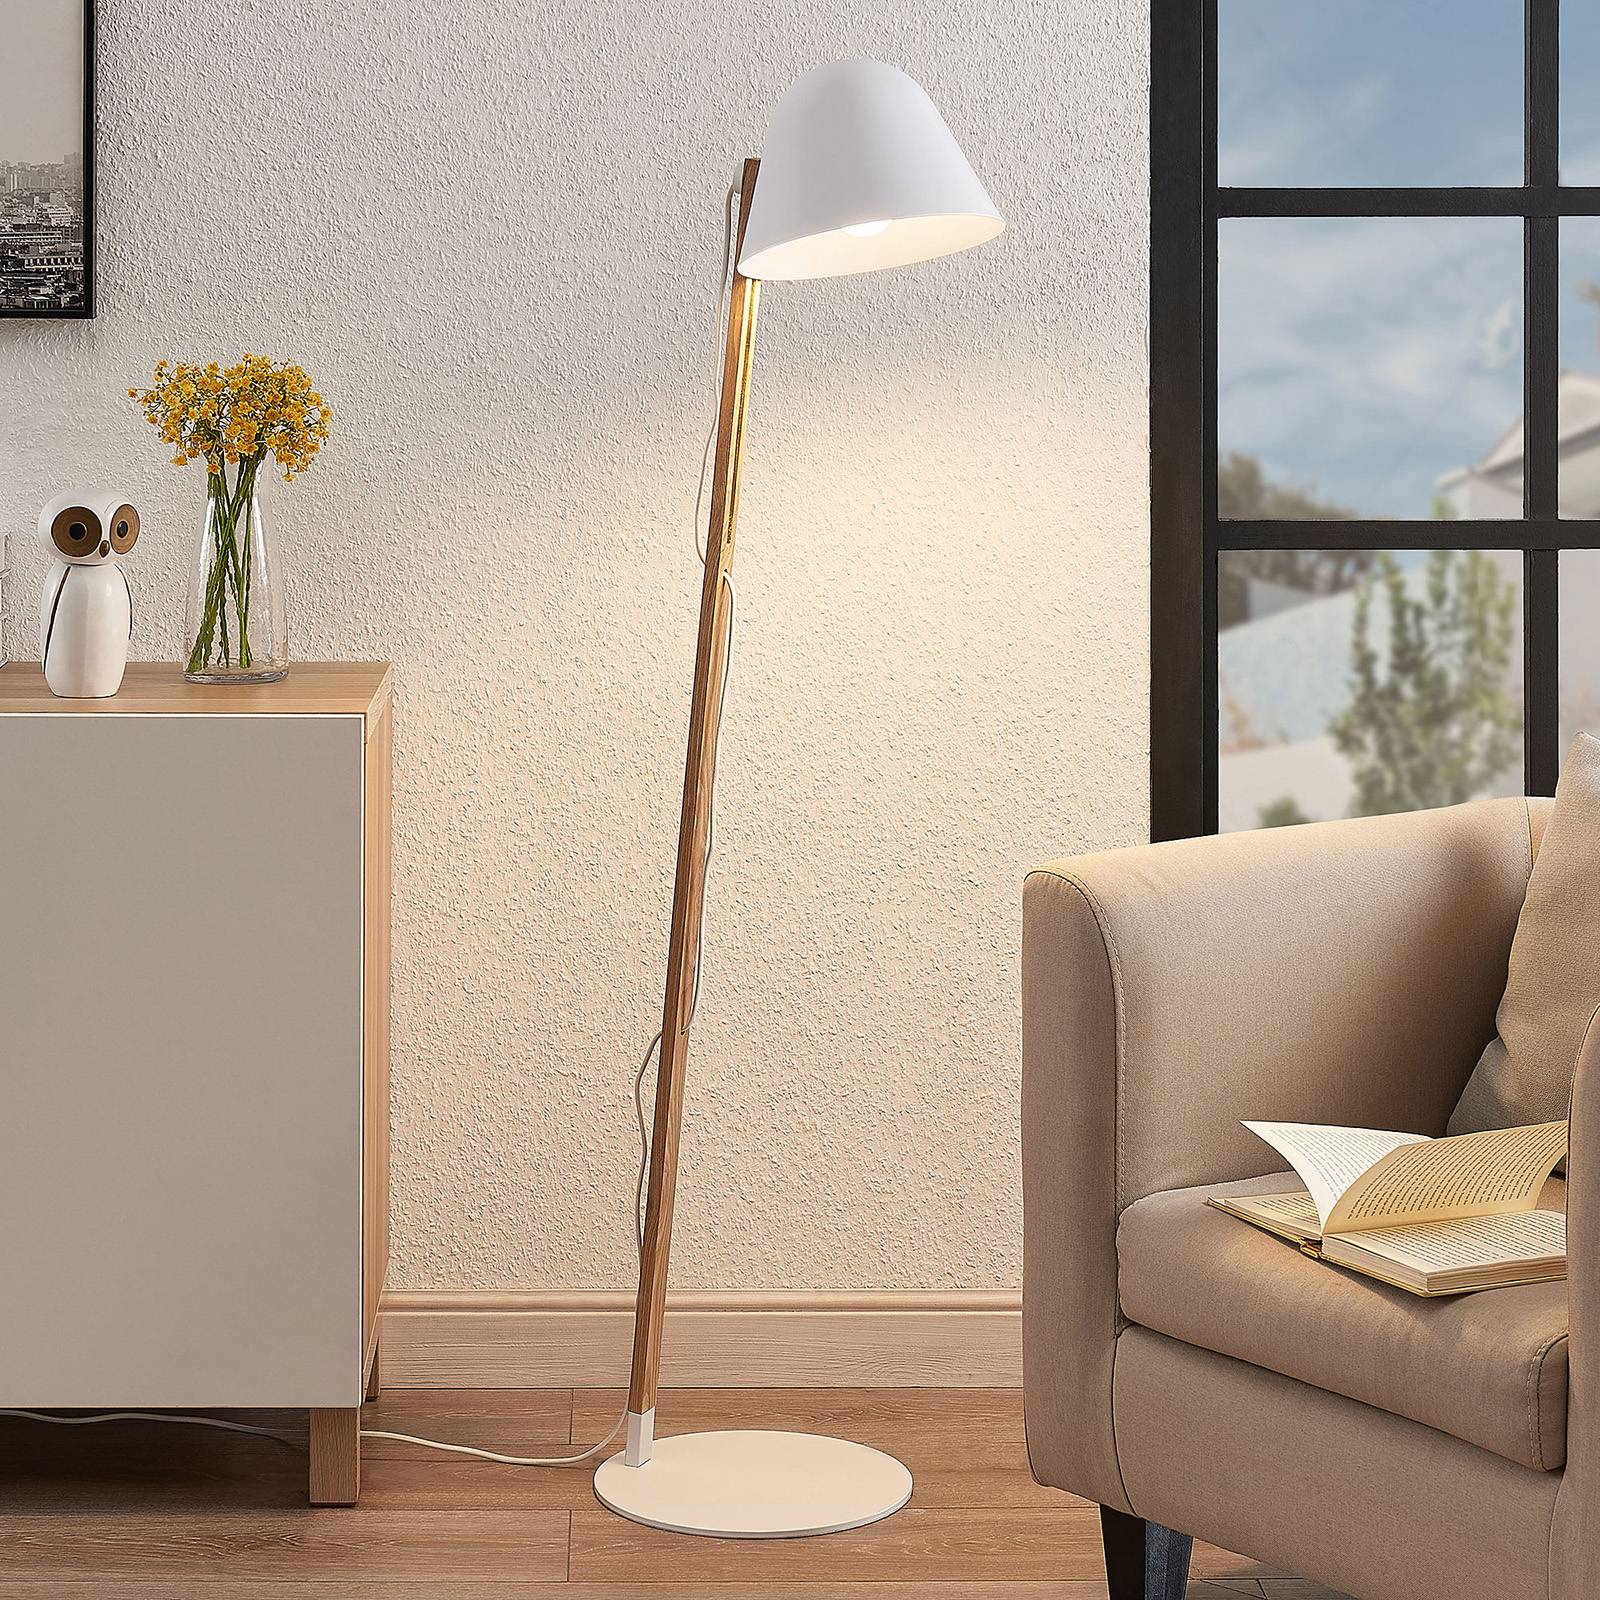 Lindby Tetja vloerlamp met houten paal, wit